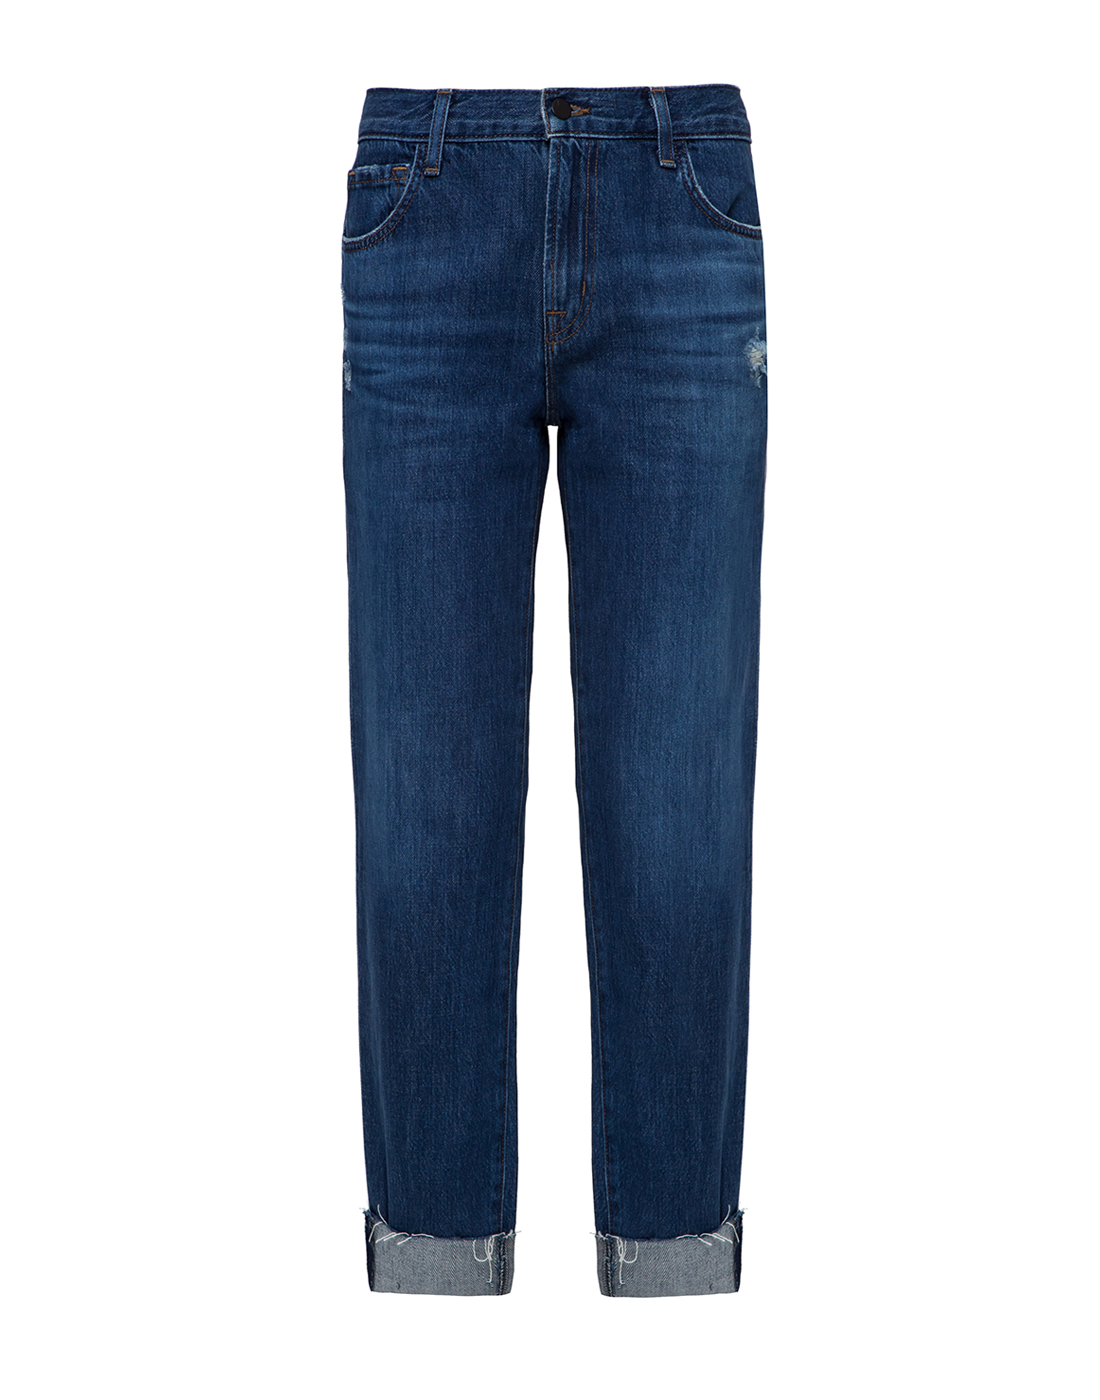 Женские синие джинсы J BRAND SJB001117-1